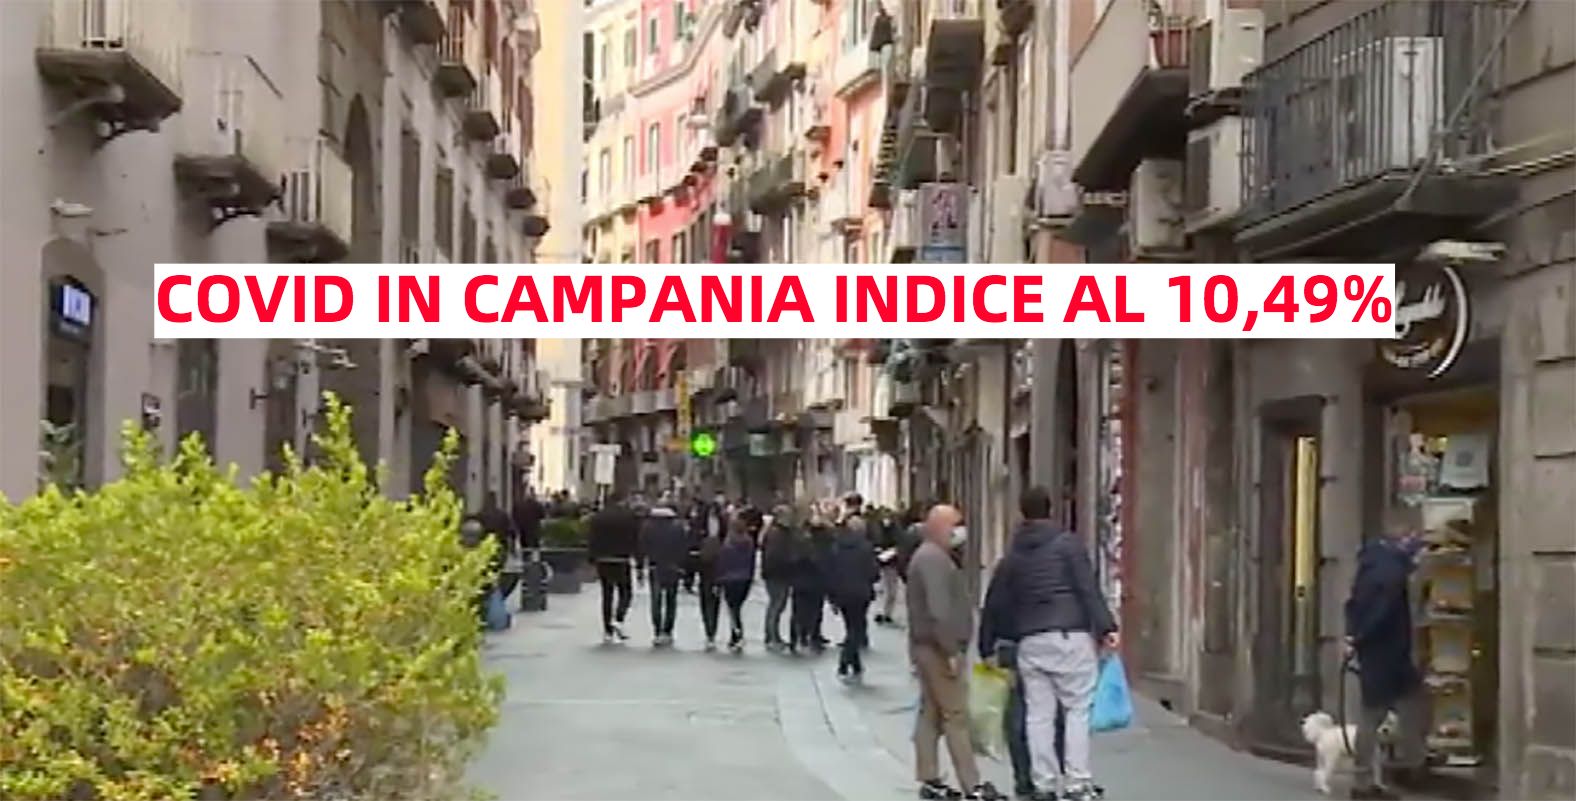 Covid in Campania: percentuale ancora sopra il 10%